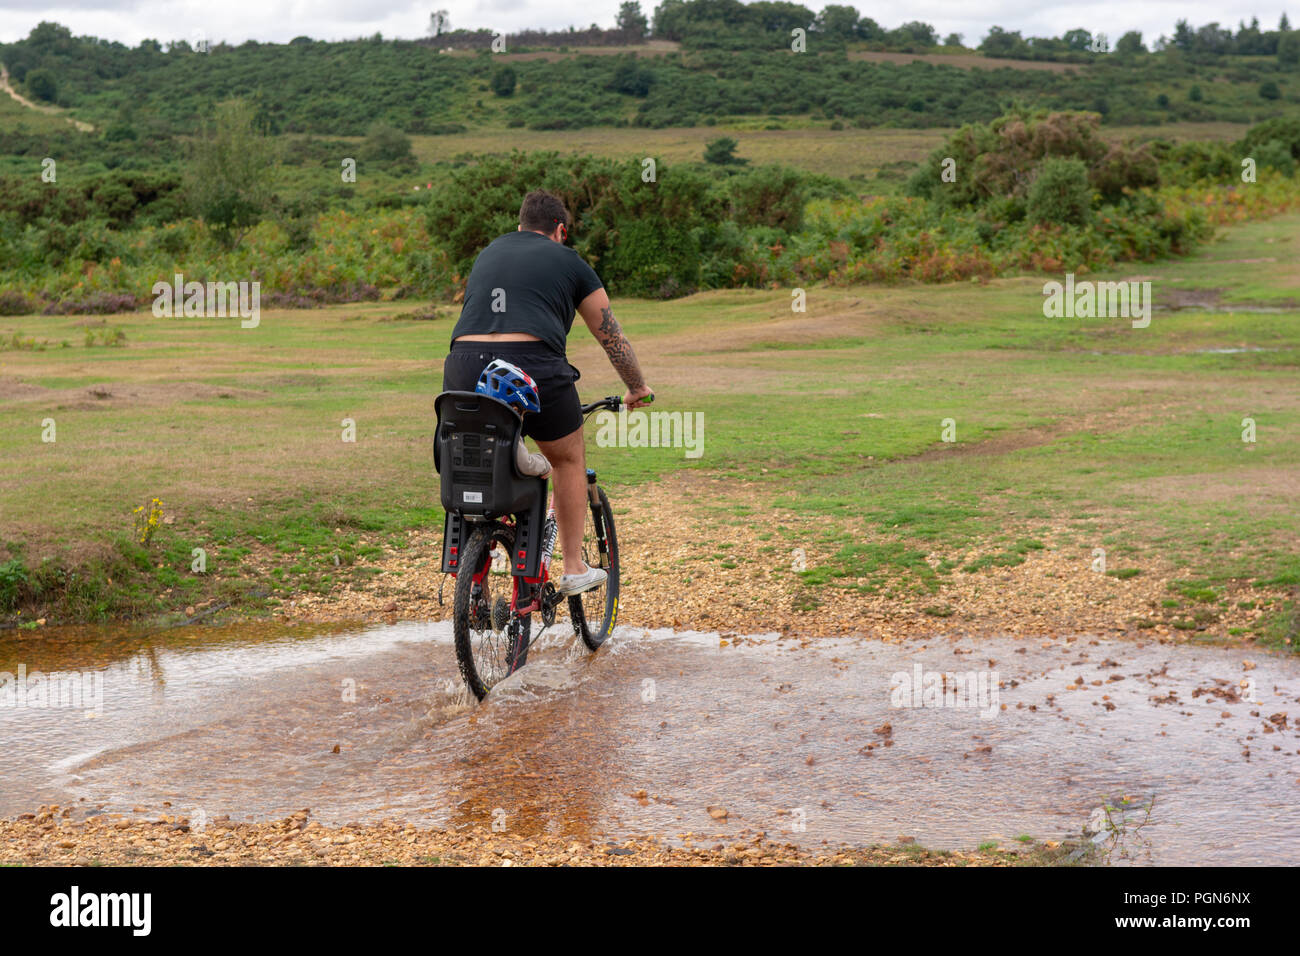 Hombre vestido con pantalones cortos en bicicleta a través del agua con un niño pequeño en la parte posterior de la bicicleta. Foto de stock